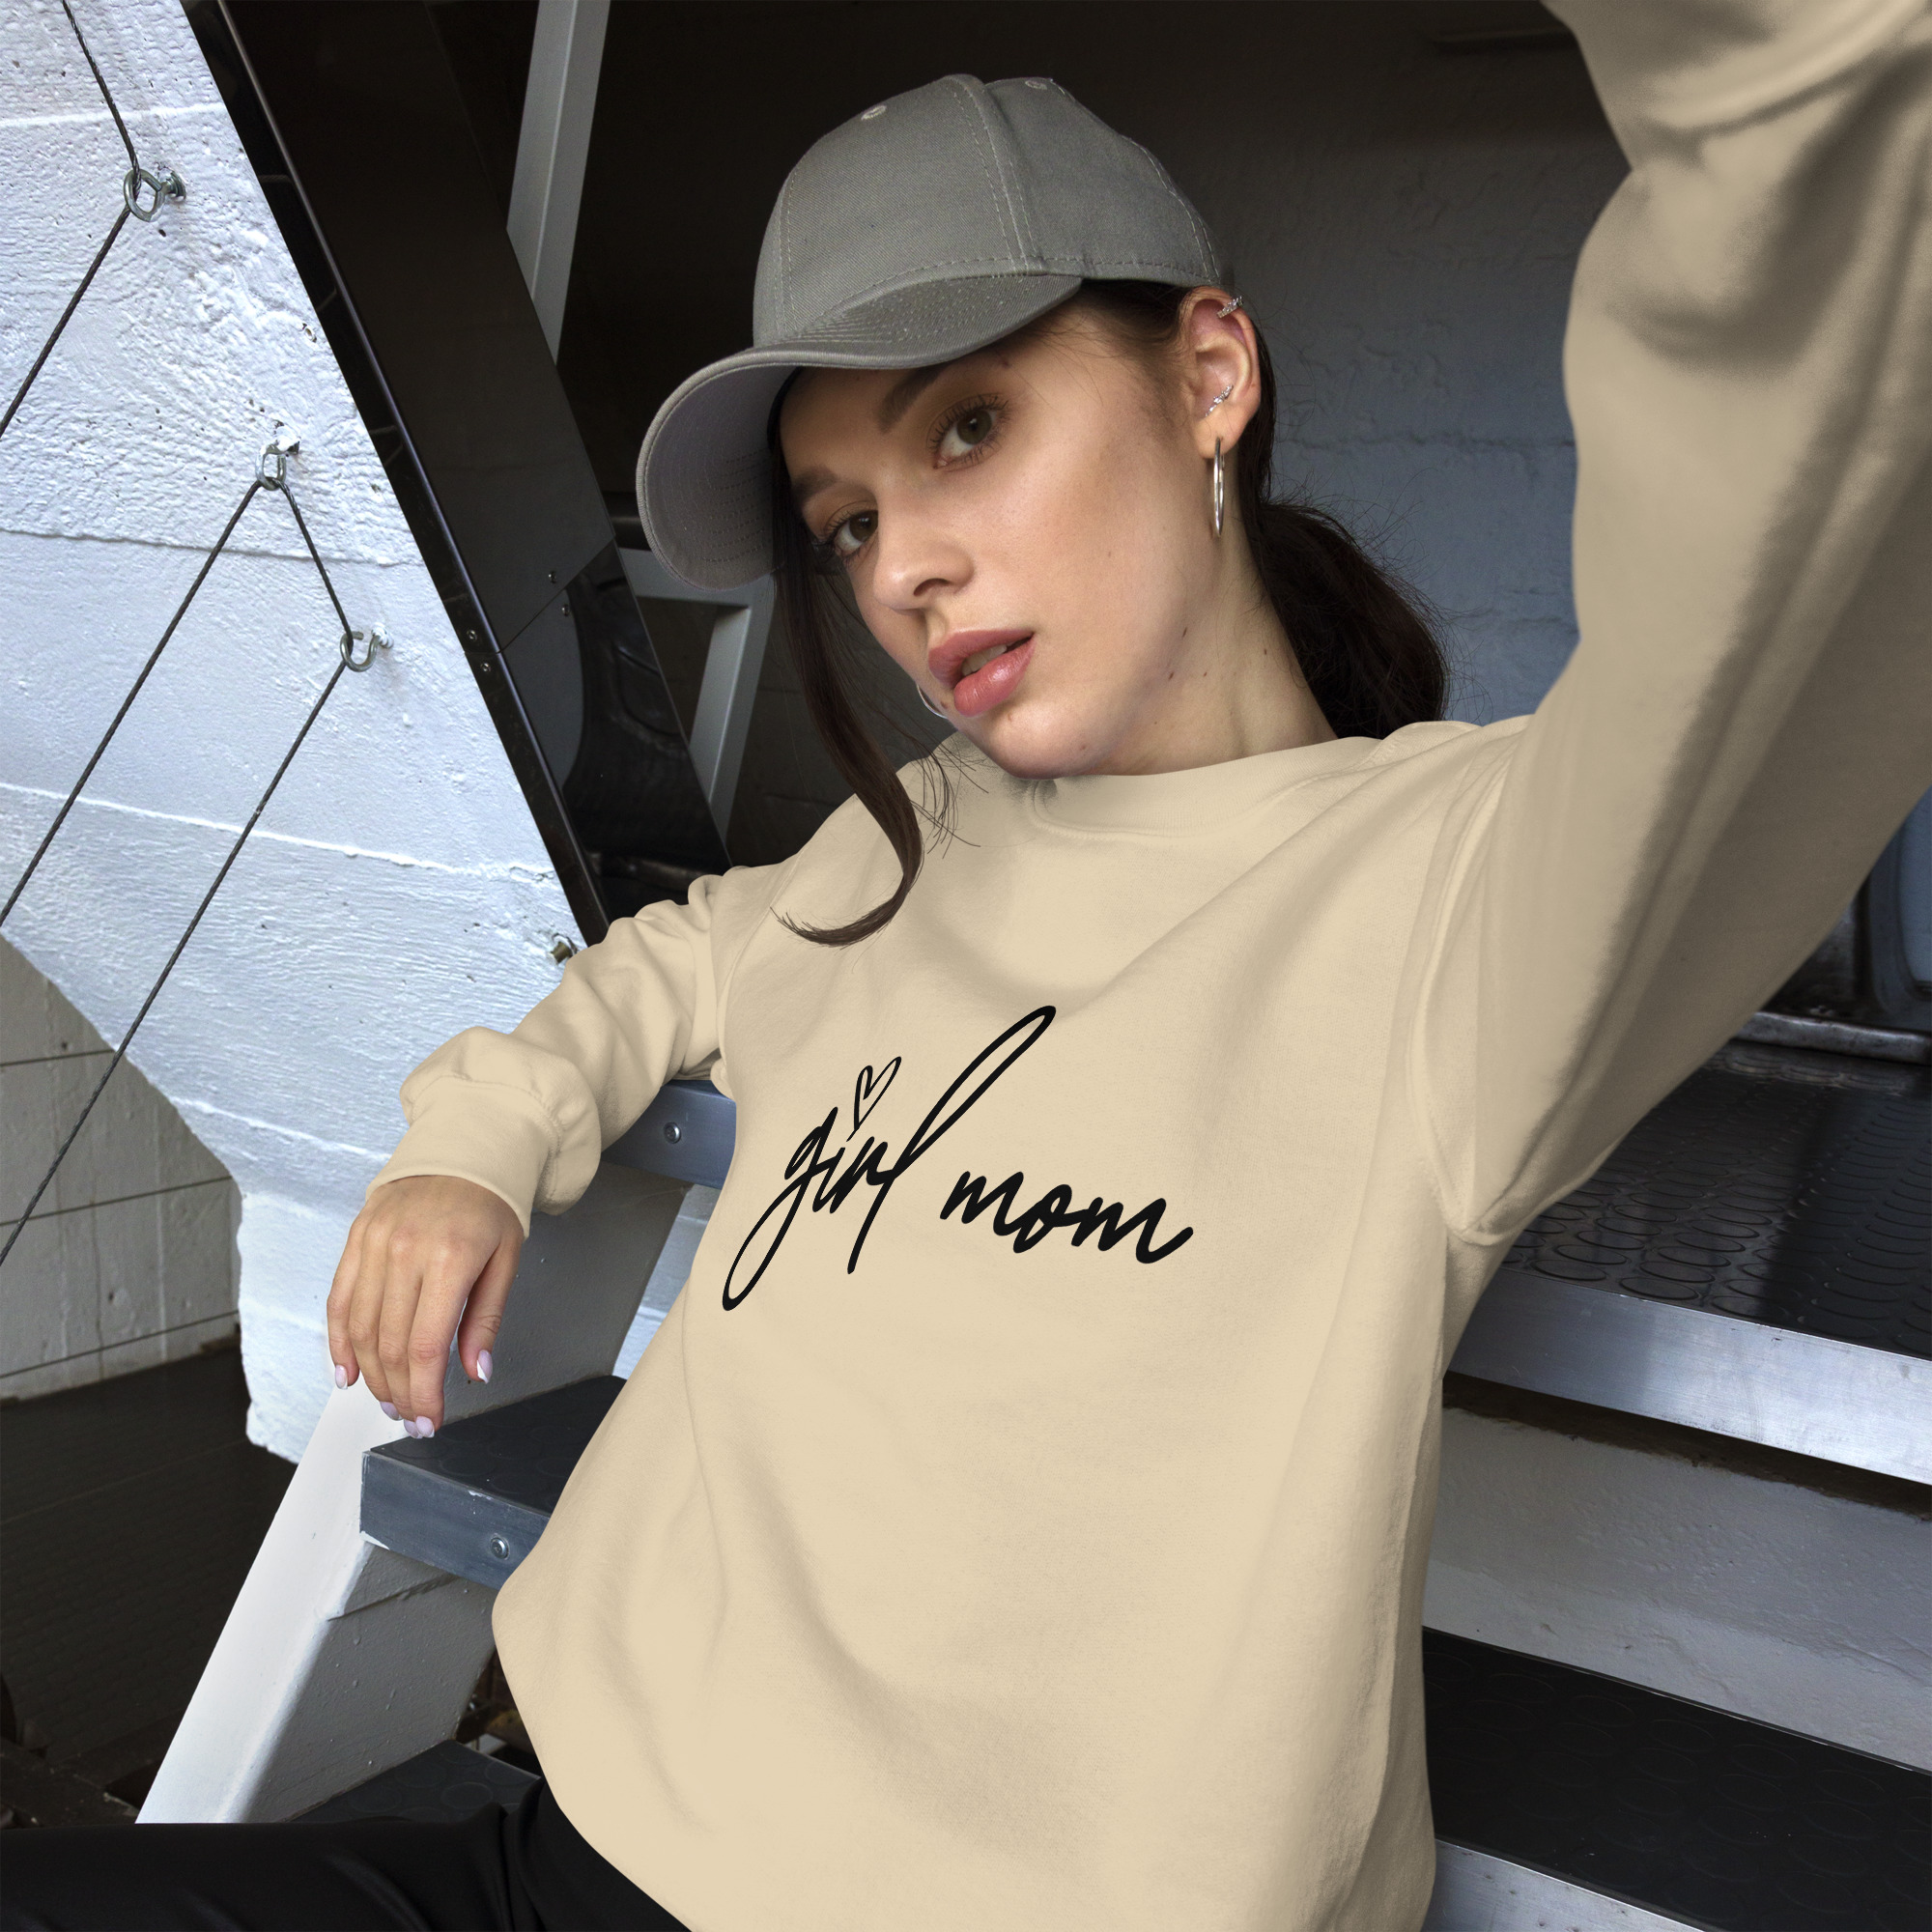 "girl mom" women’s sweatshirt